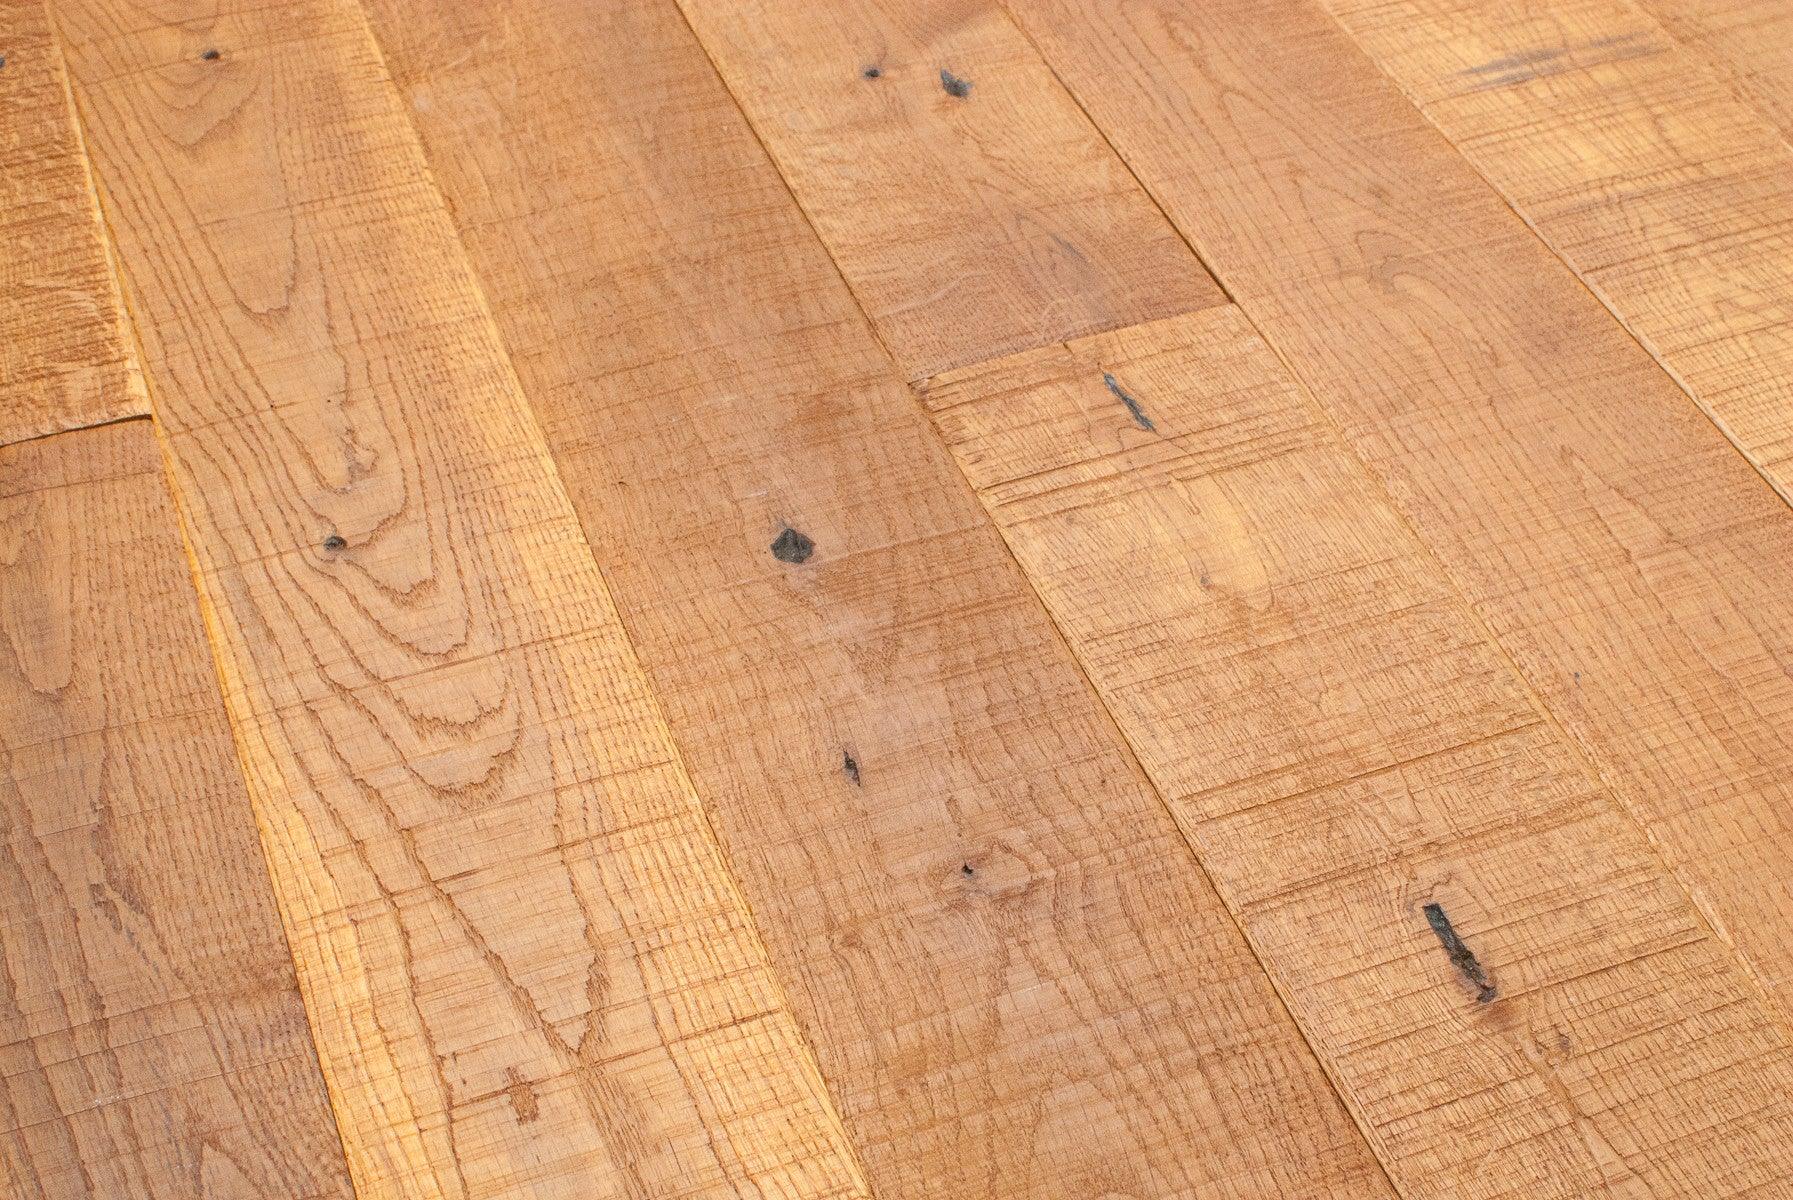 Rustic Smoke Stain 5 White Oak Solid Hardwood Easiklip Floors